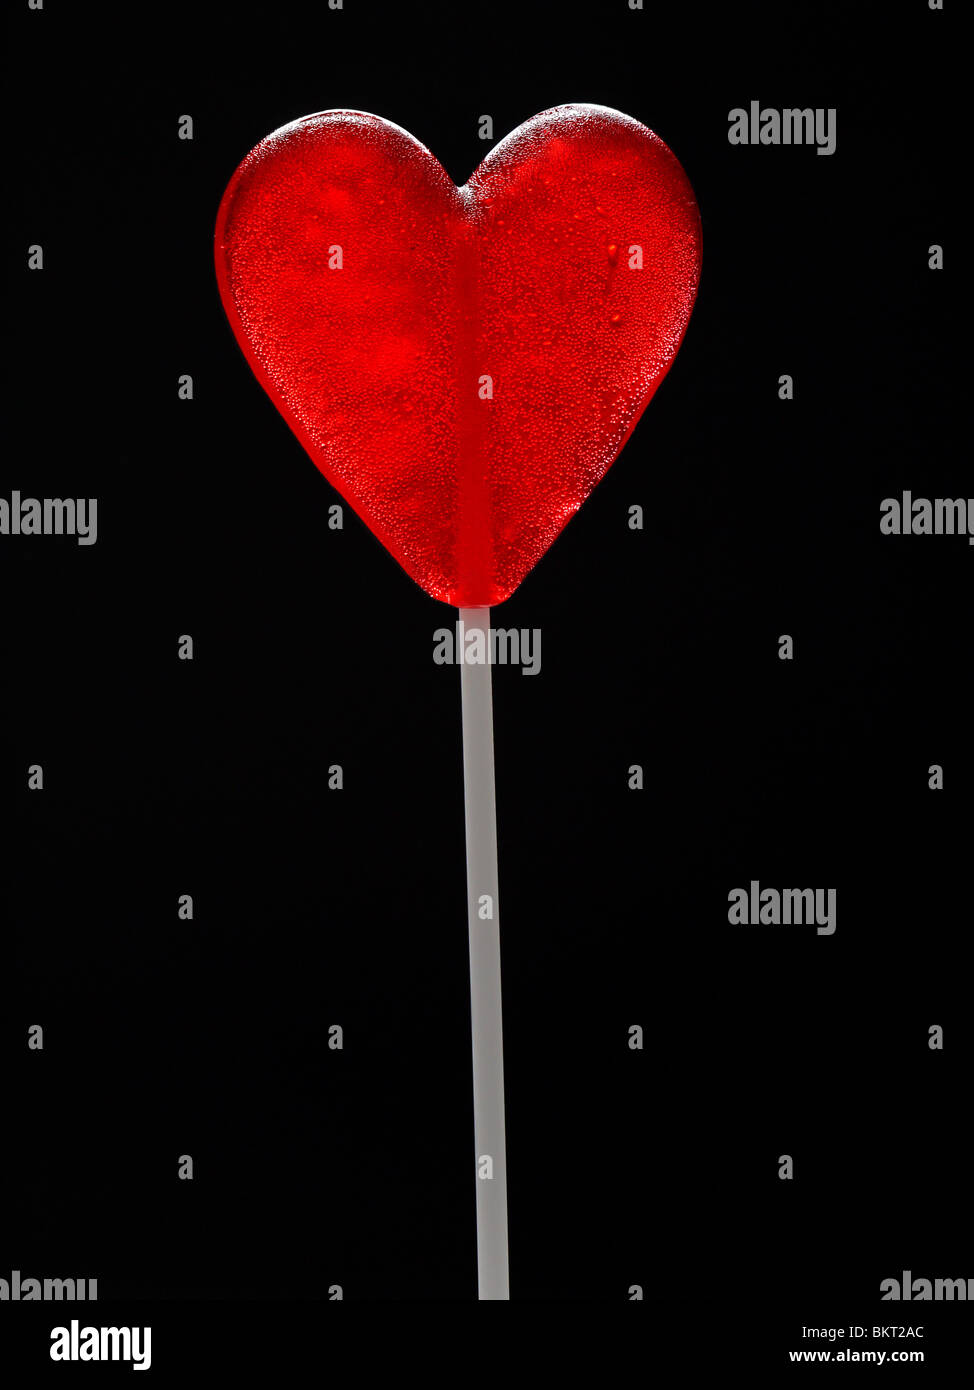 Red Heart-shaped lollipop tourné sur fond noir Banque D'Images